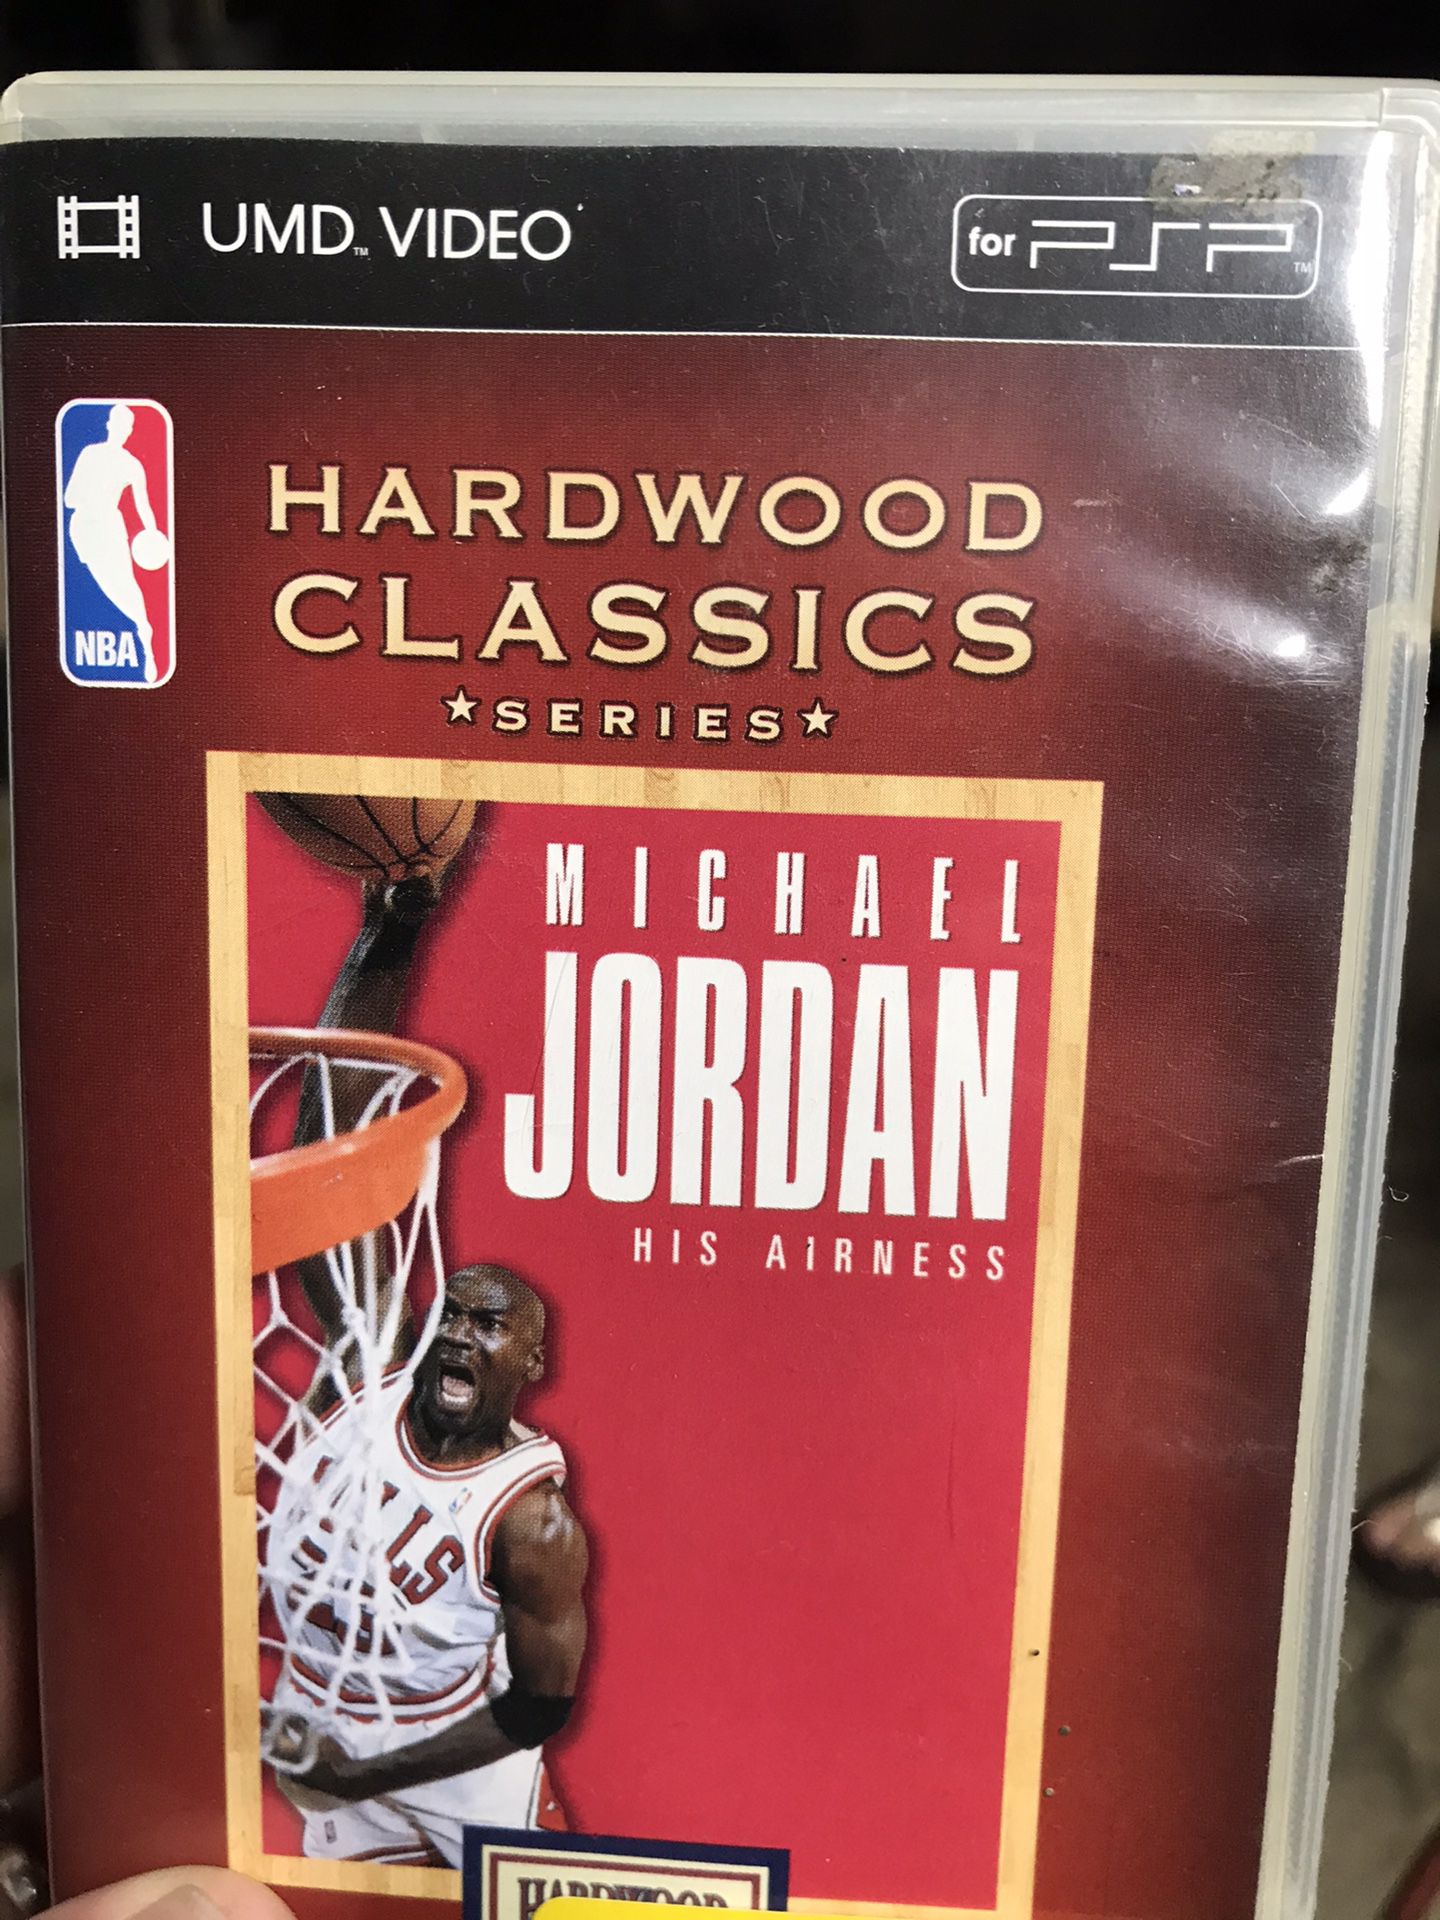 PSP Hard Wood Classics of Michael Jordan